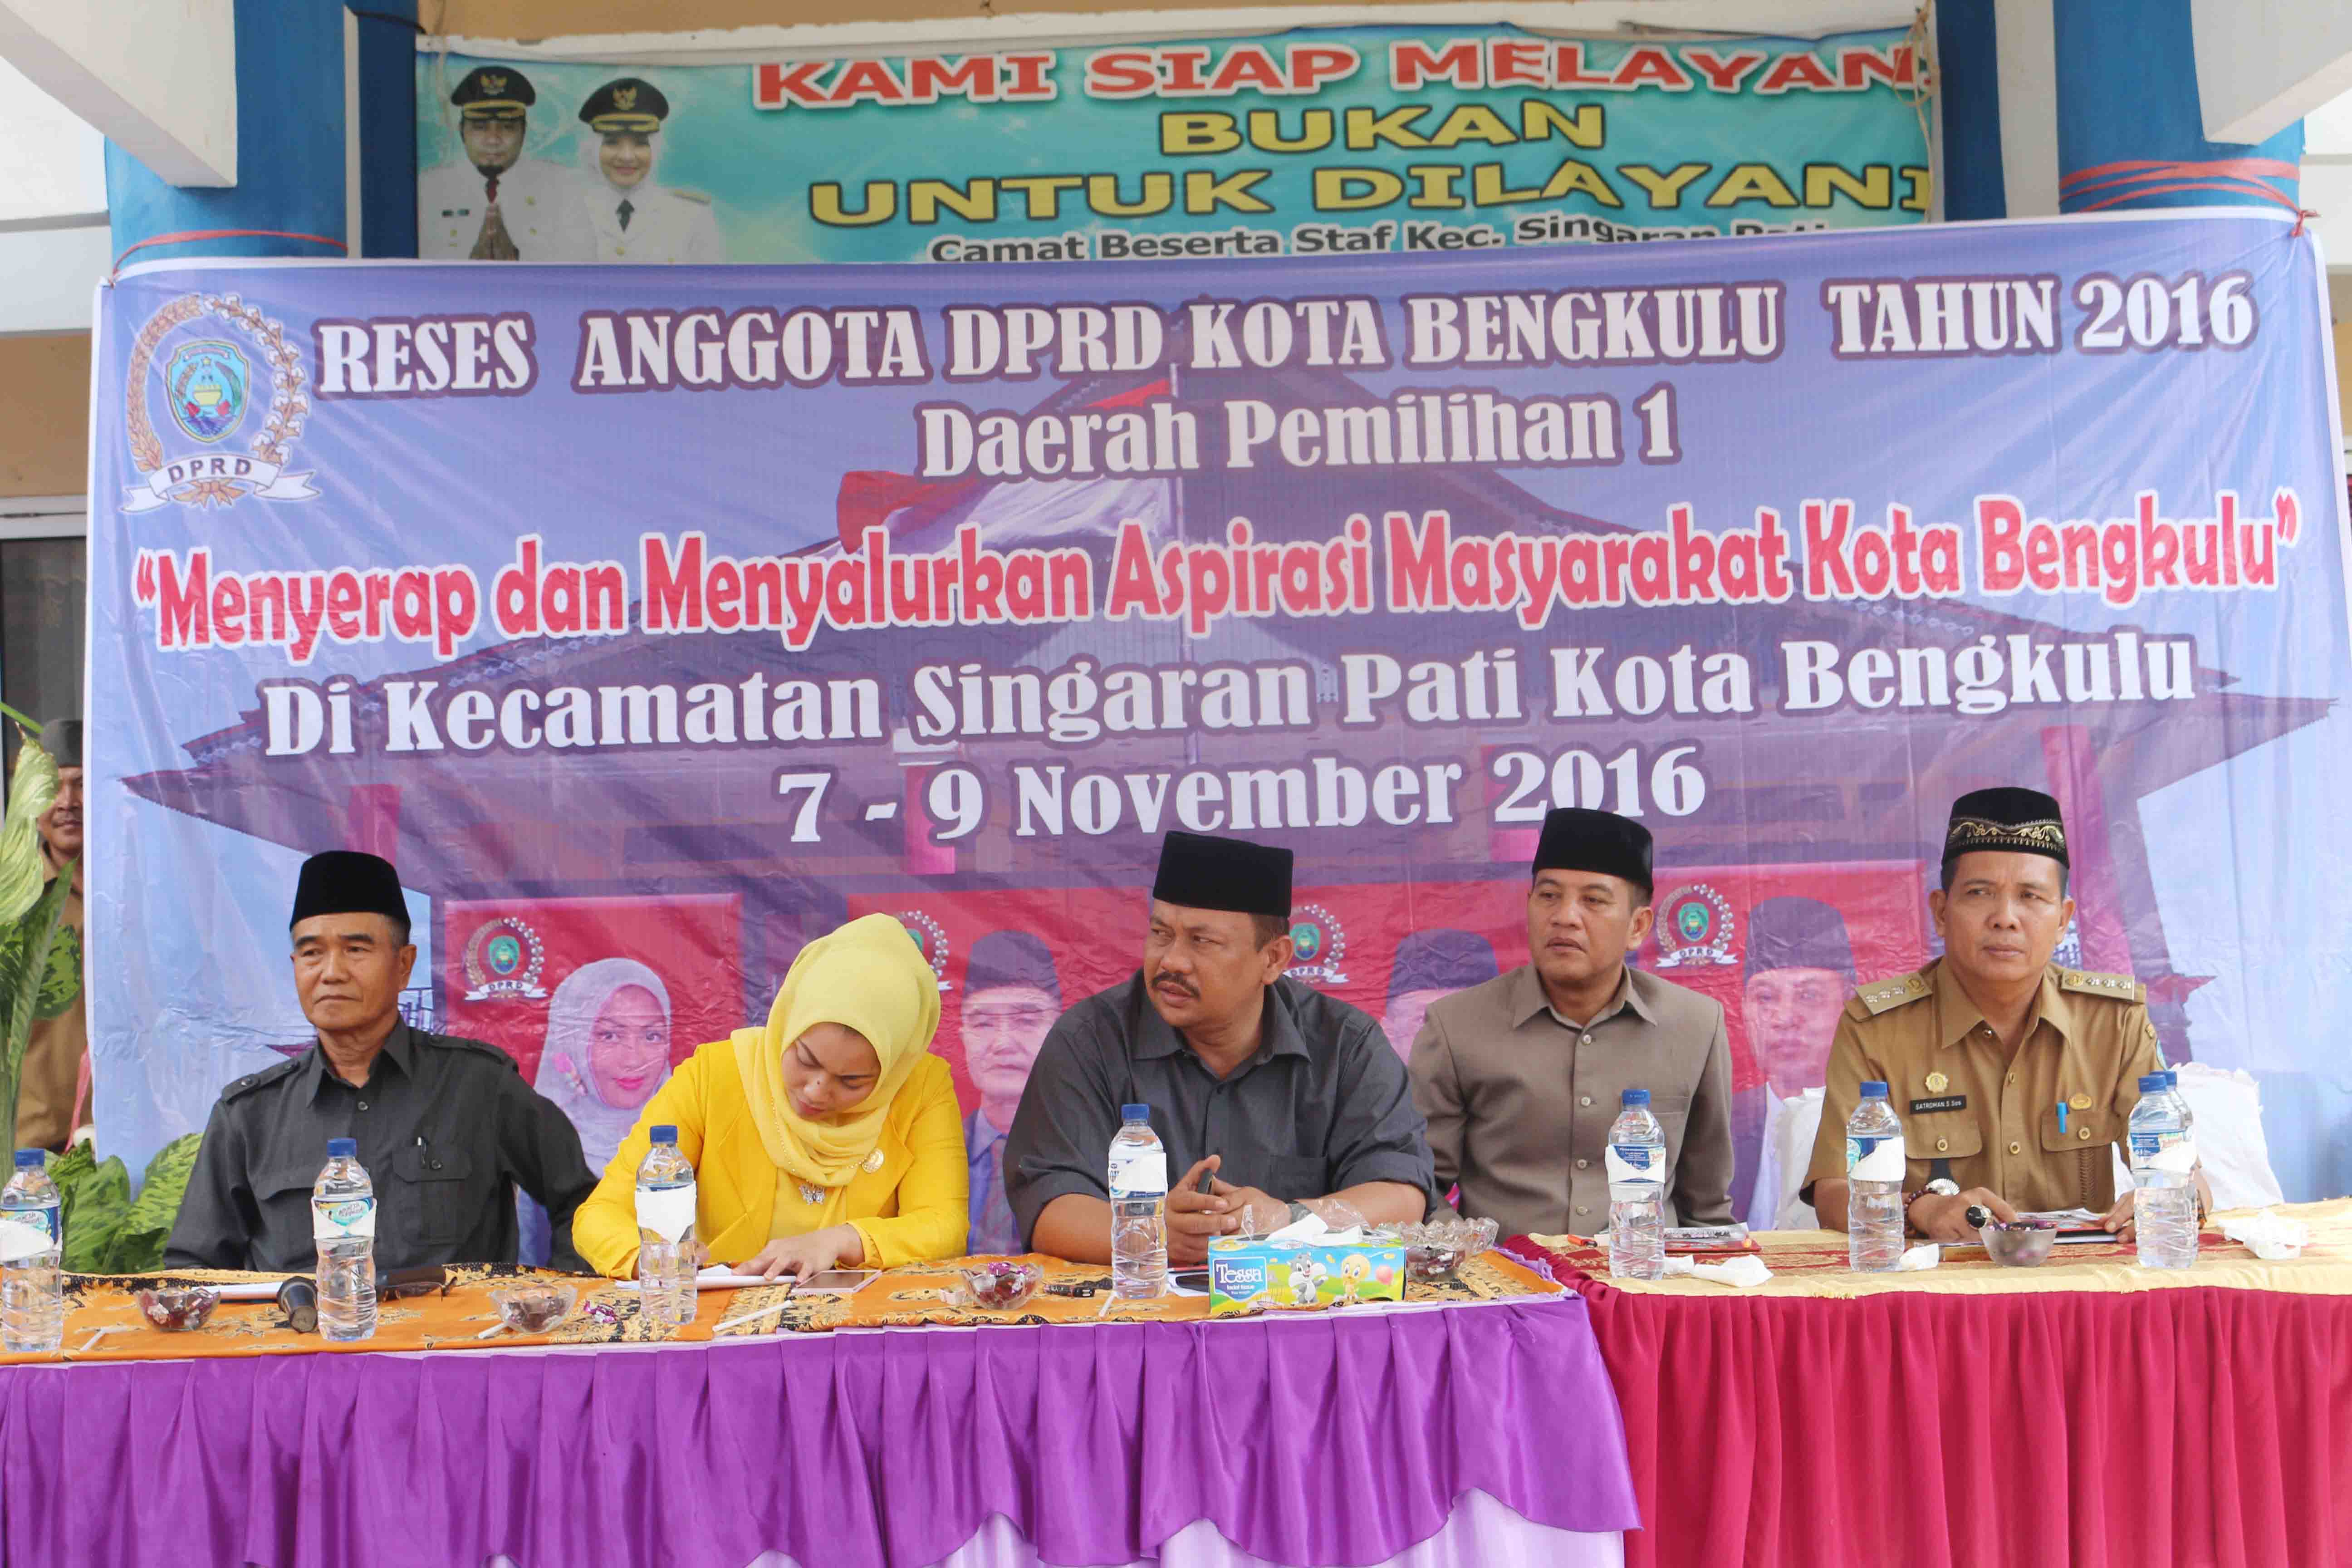 Reses Anggota DPRD Kota Bengkulu di Singaran Pati